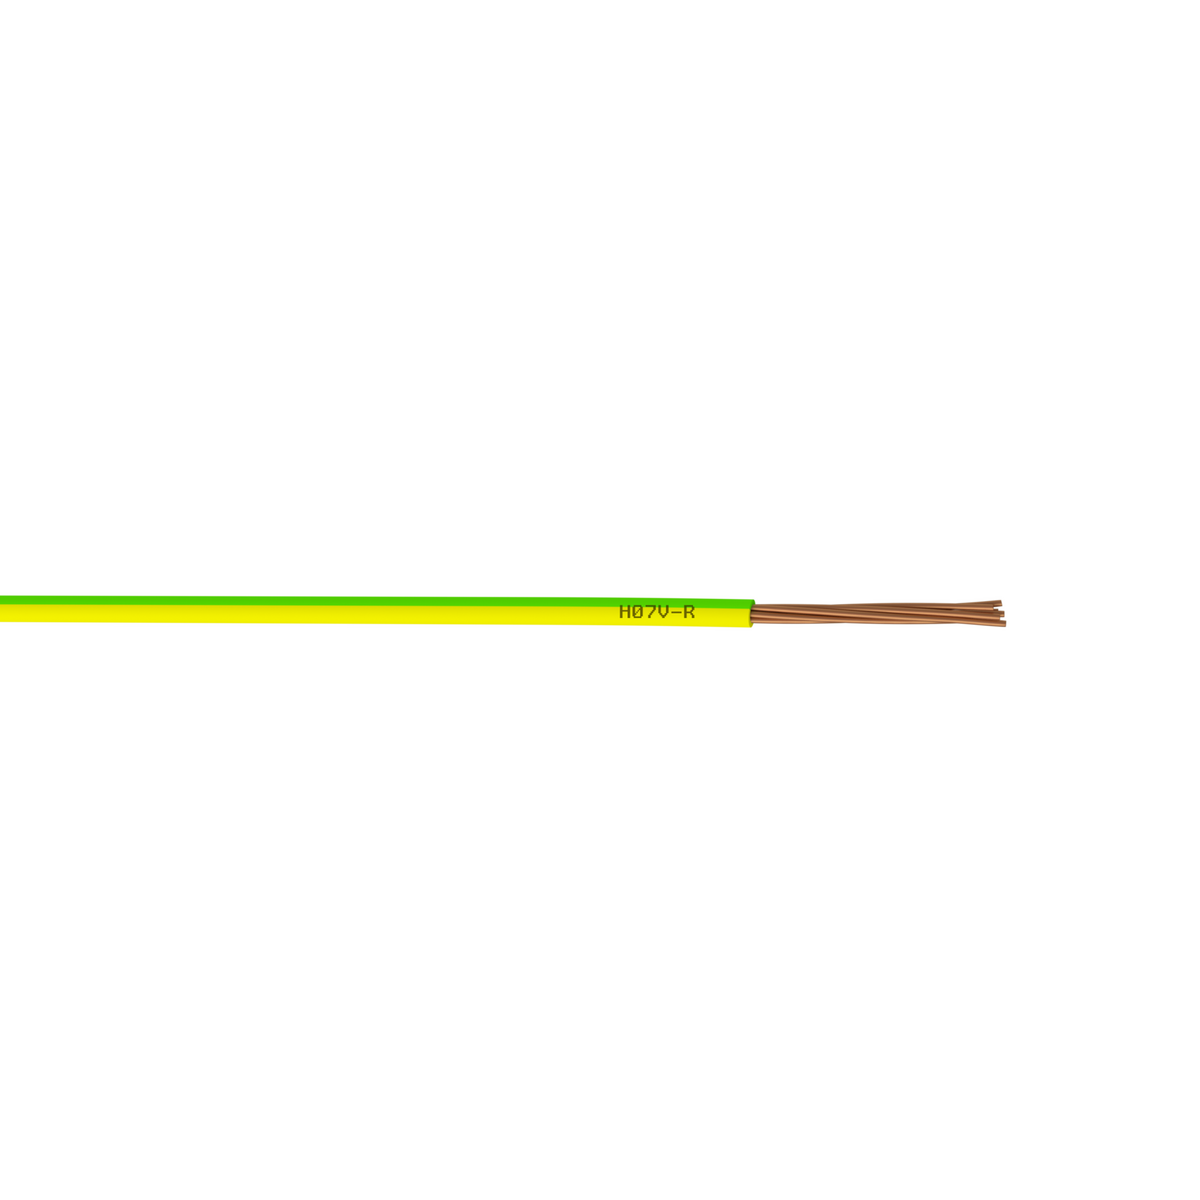 CENTRALE BRICO Fil électrique 2.5 mm² h07vu L.10 m, vert / jaune